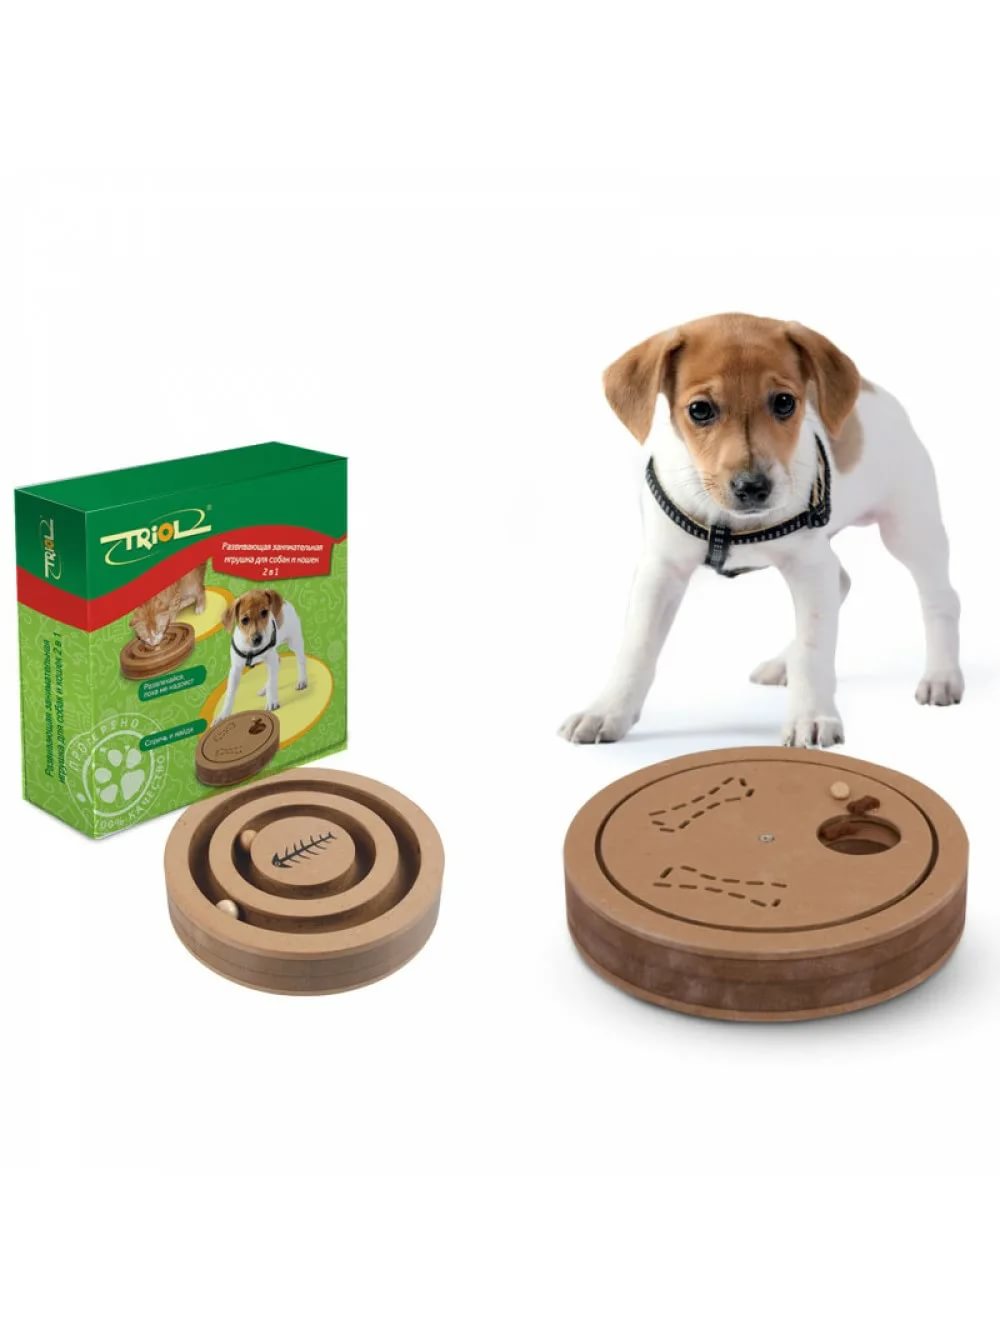 Развивающая игрушка для собак и кошек "2 в 1" Triol от зоомагазина Дино Зоо